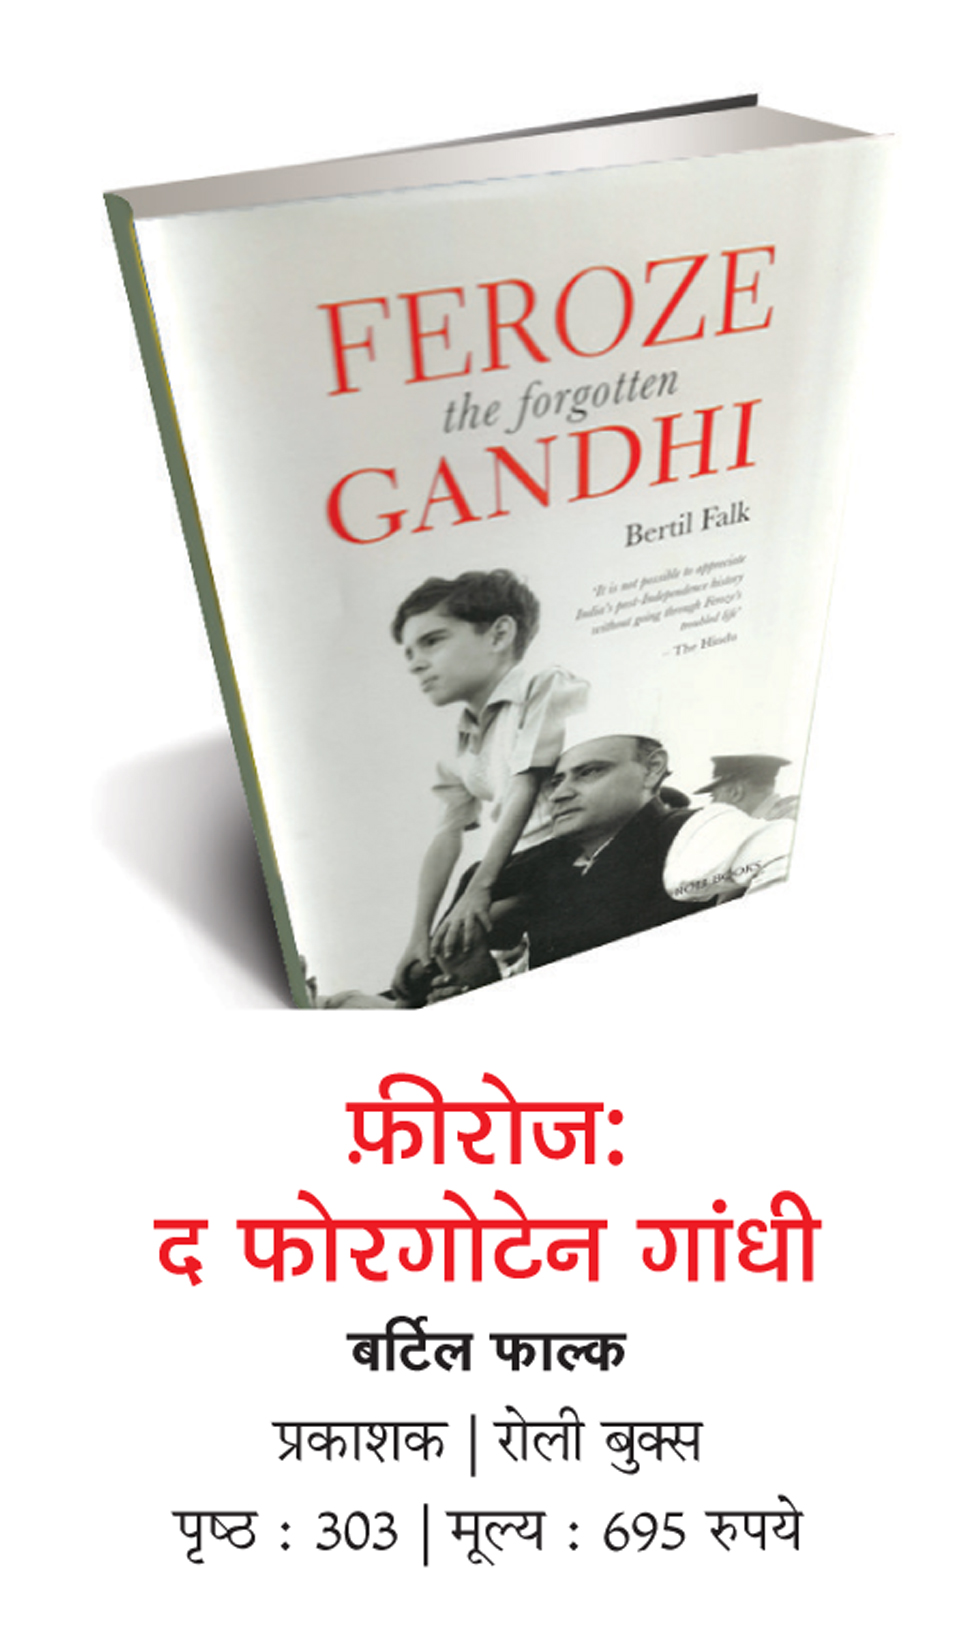 फीरोज गांधी पर काफी जानकारी देती है पुस्तक